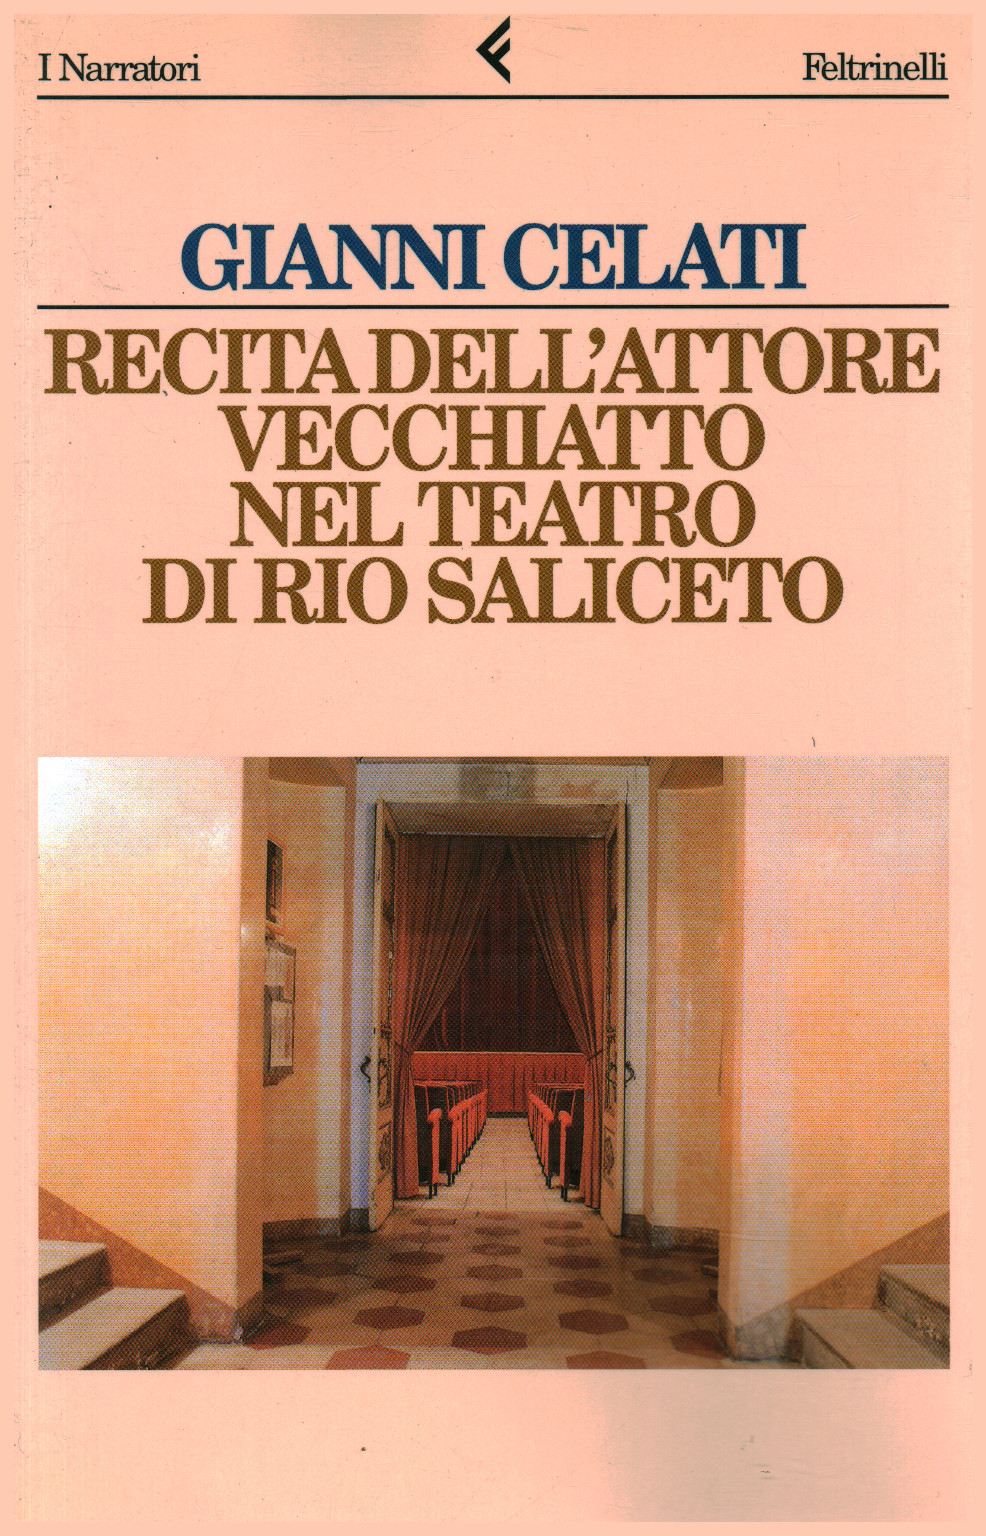 Sagen sie dell schauspieler Vecchiatto im theater von Rio Sa, s.zu.